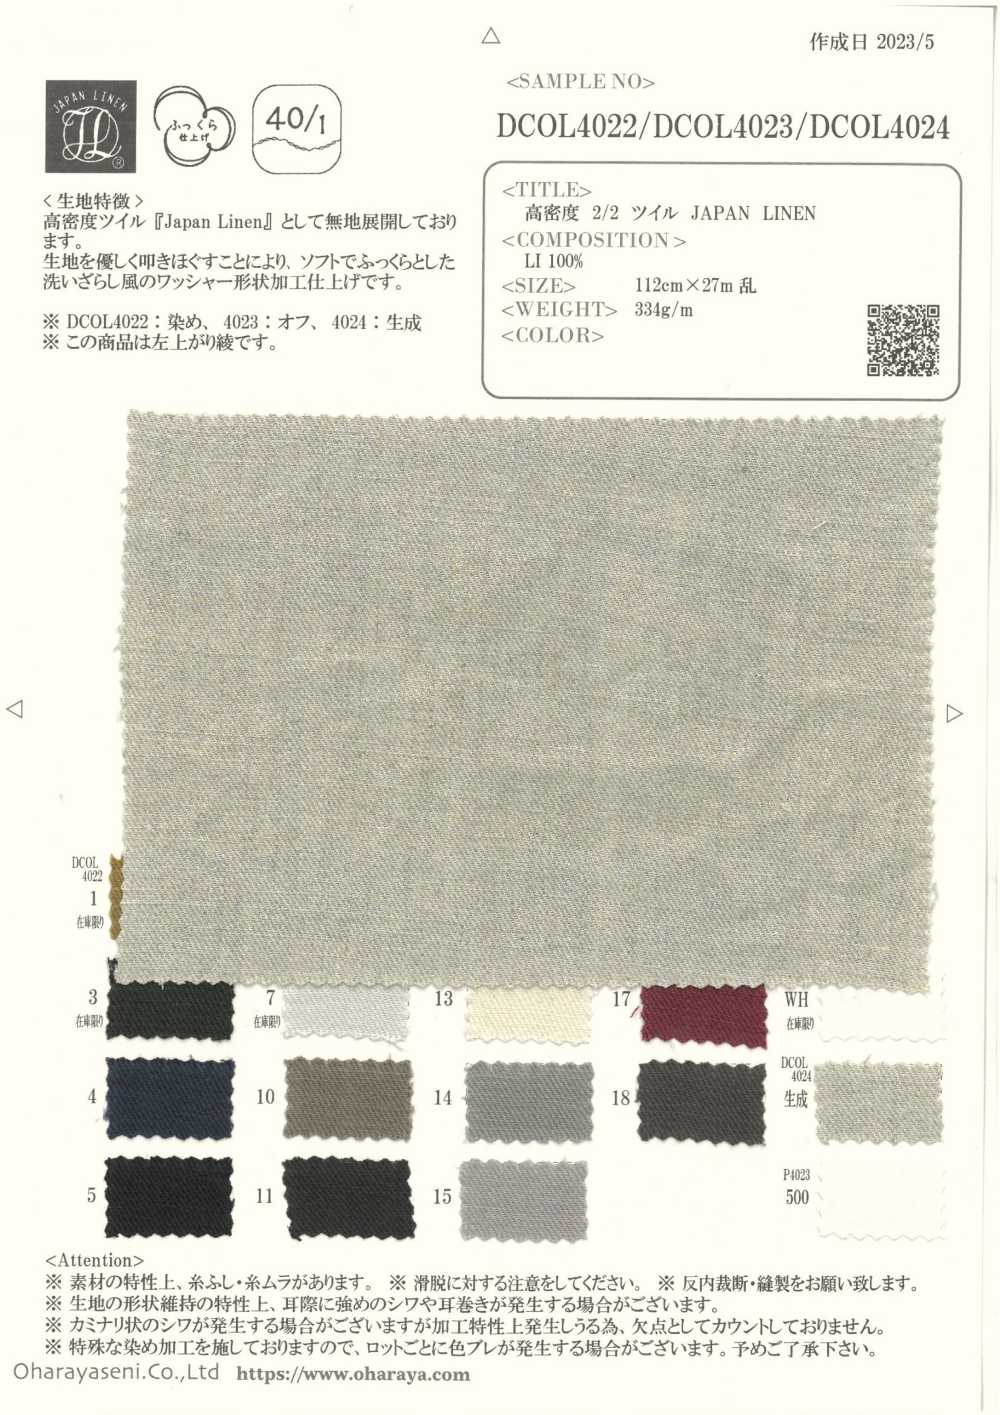 DCOL4024 LINHO JAPÃO DE Sarja 2/2 De Alta Densidade[Têxtil / Tecido] Oharayaseni